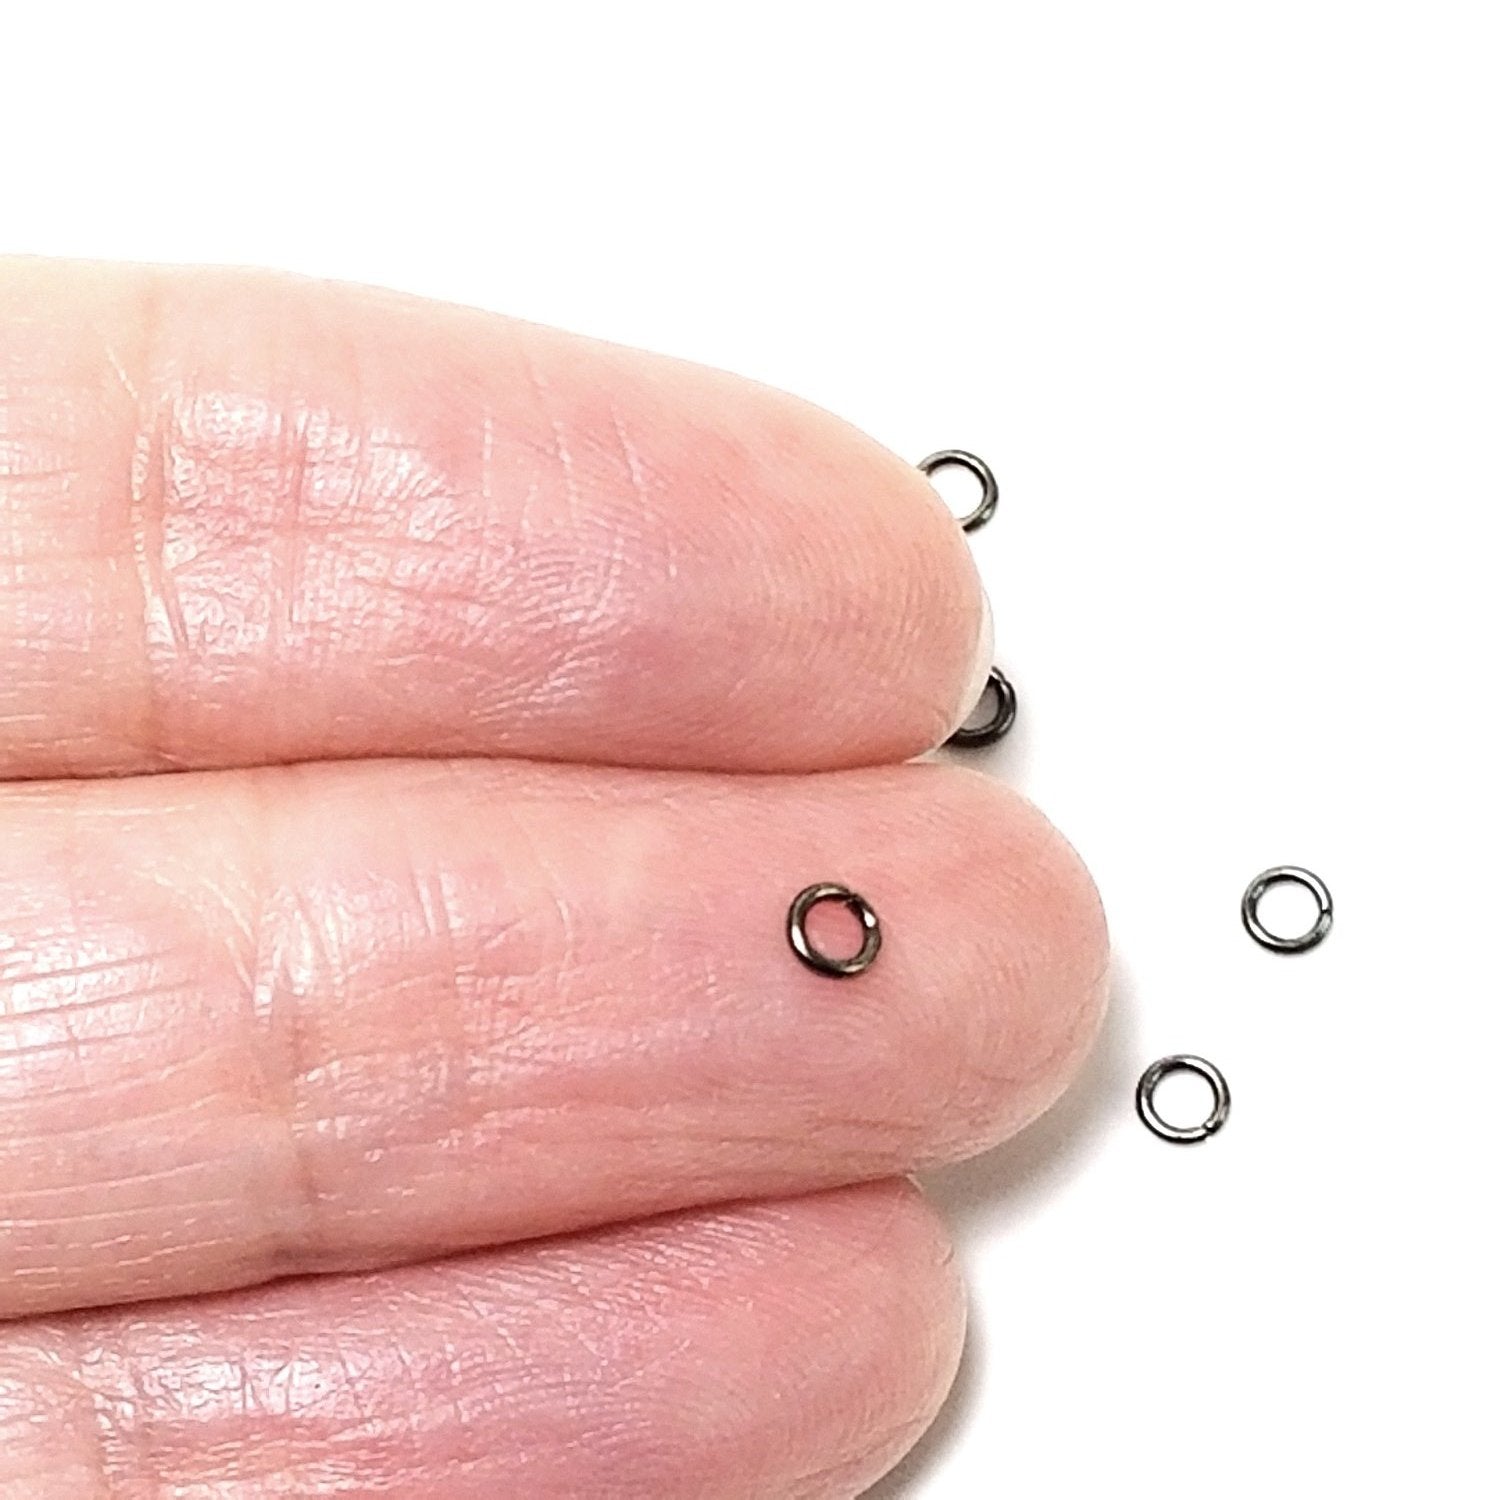 3mm Hematite / Black Stainless Jump Rings, 3x0.6mm, 1.8mm Inside